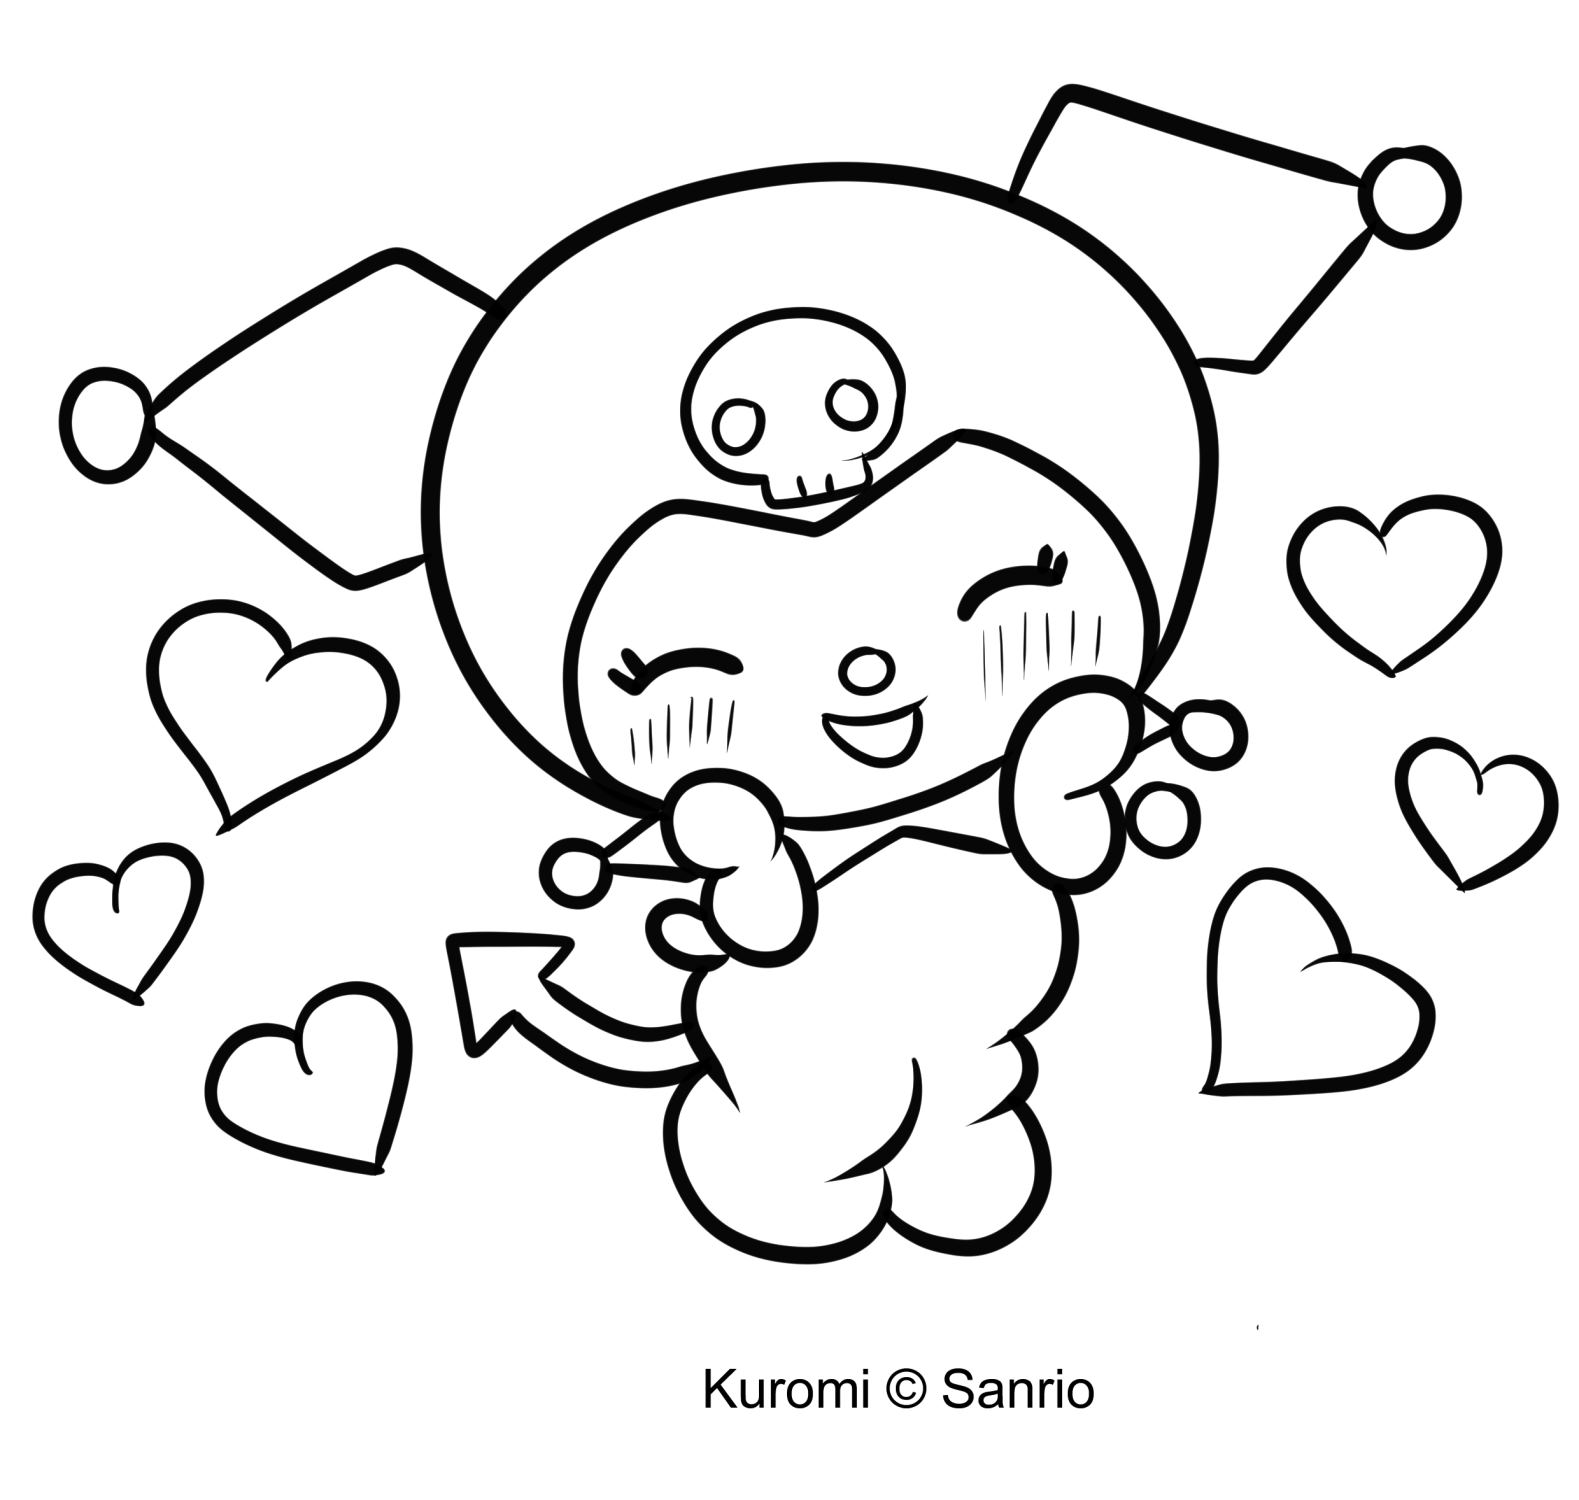 Coloriage de Kuromi 09 de My Melody à imprimer et colorier